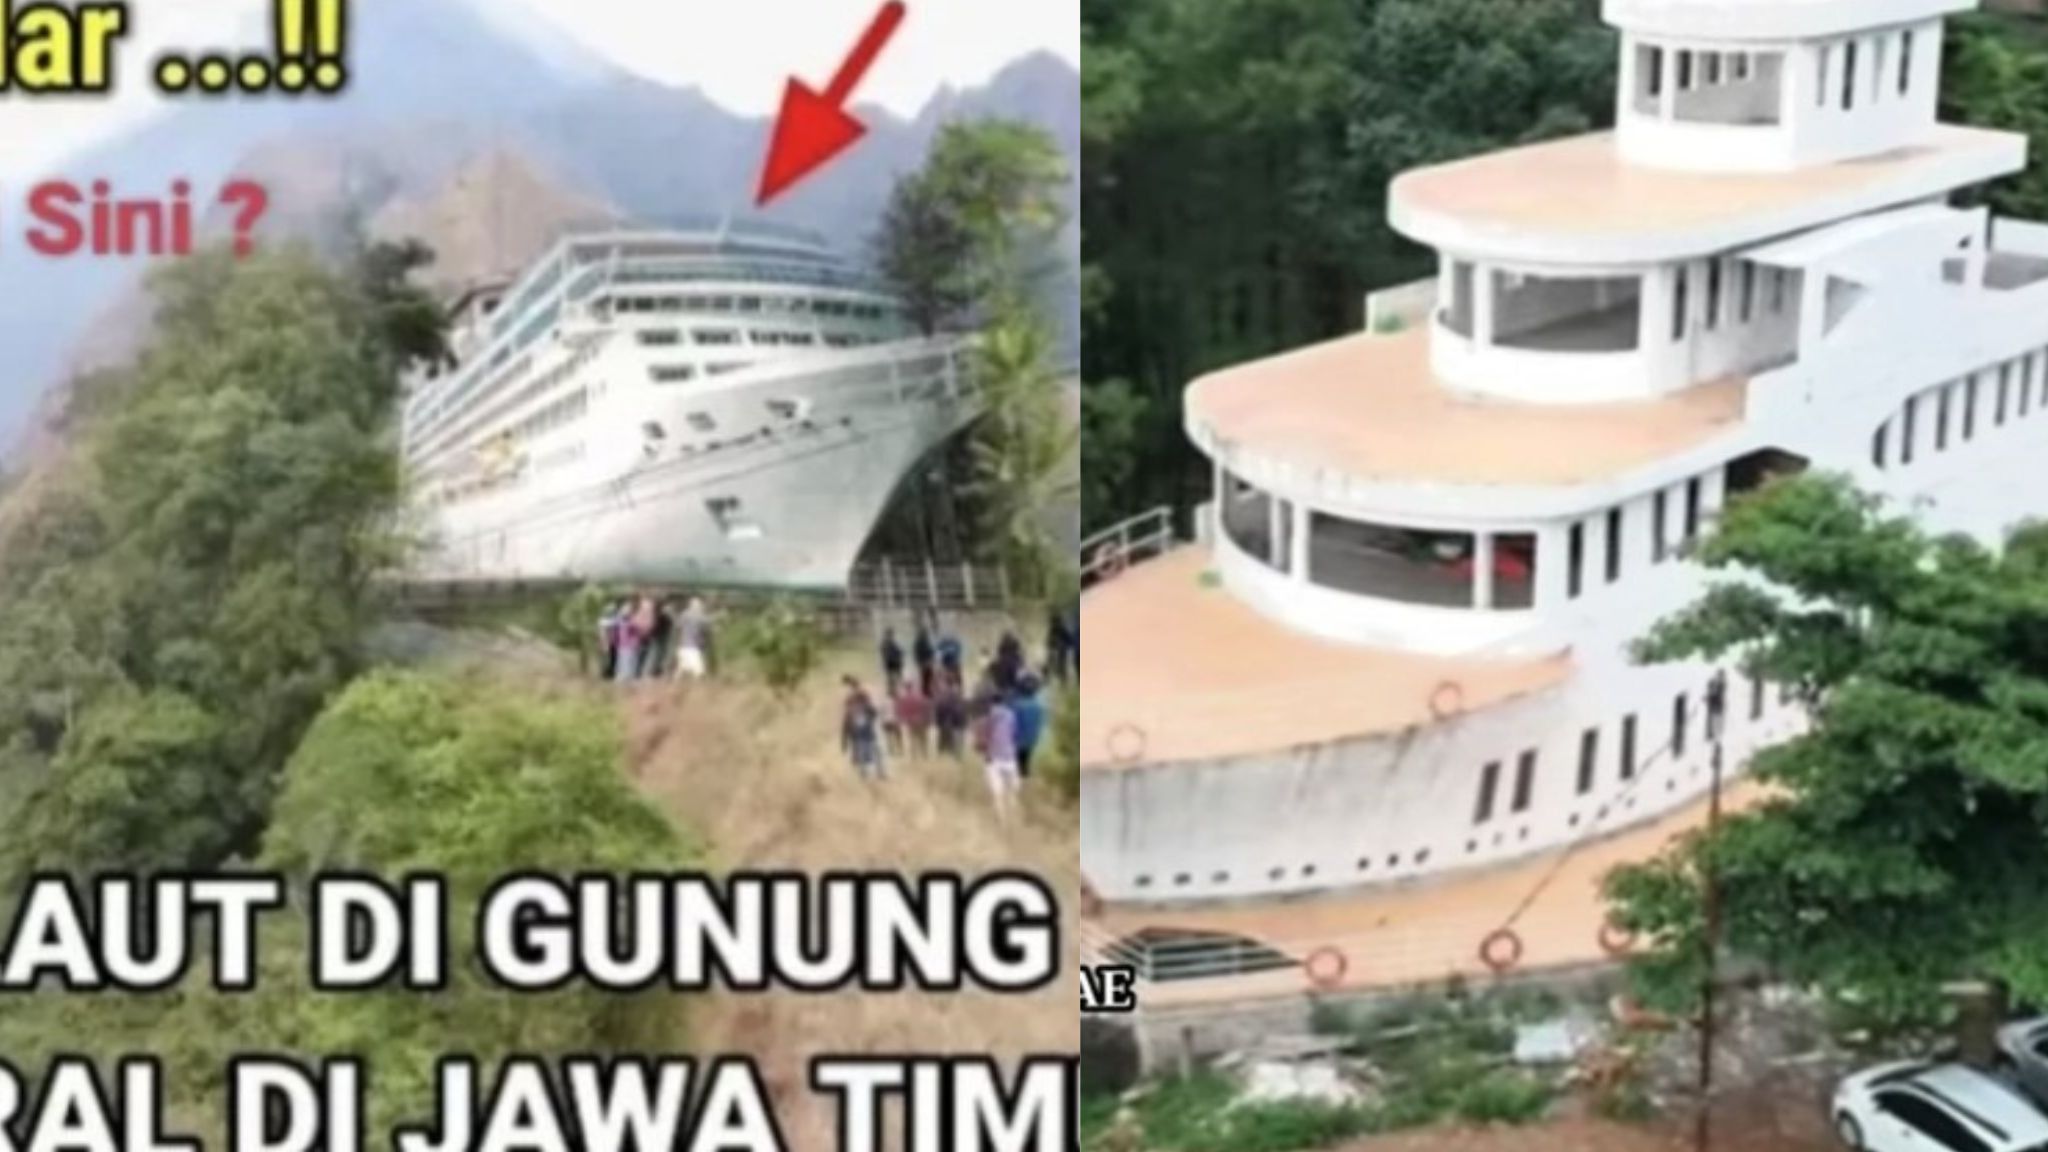 Viral dan Menakjubkan, Penemuan Kapal Laut Megah di Puncak Gunung Anjasemoro, Jawa Timur